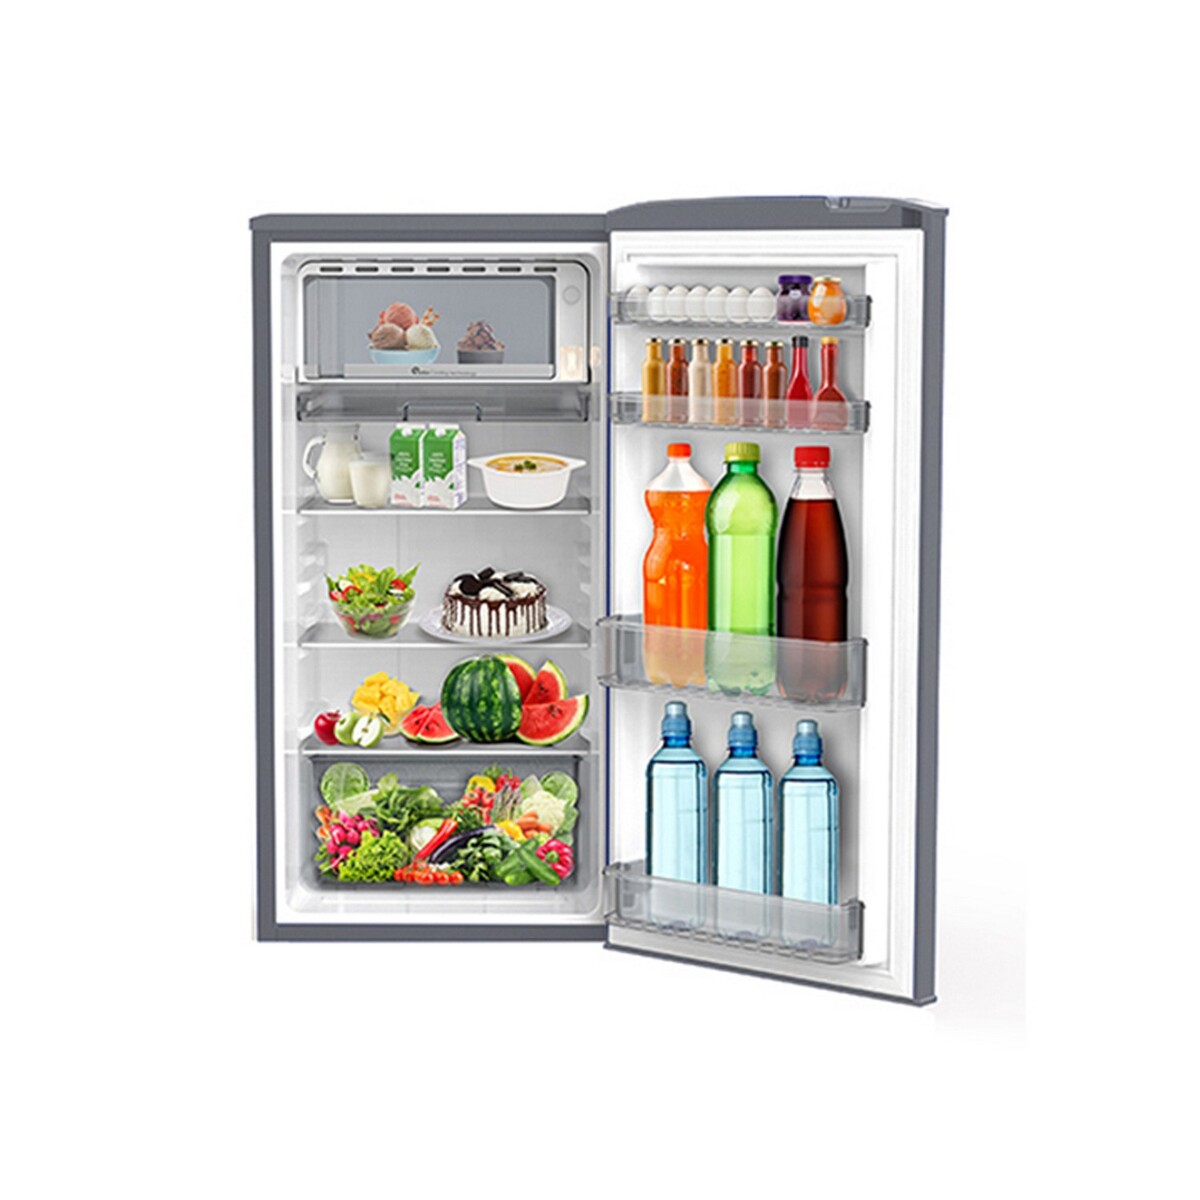 Godrej Direct-Cool Single Door Refrigerator RD EDGERIO 207B 23 192Ltr 2*